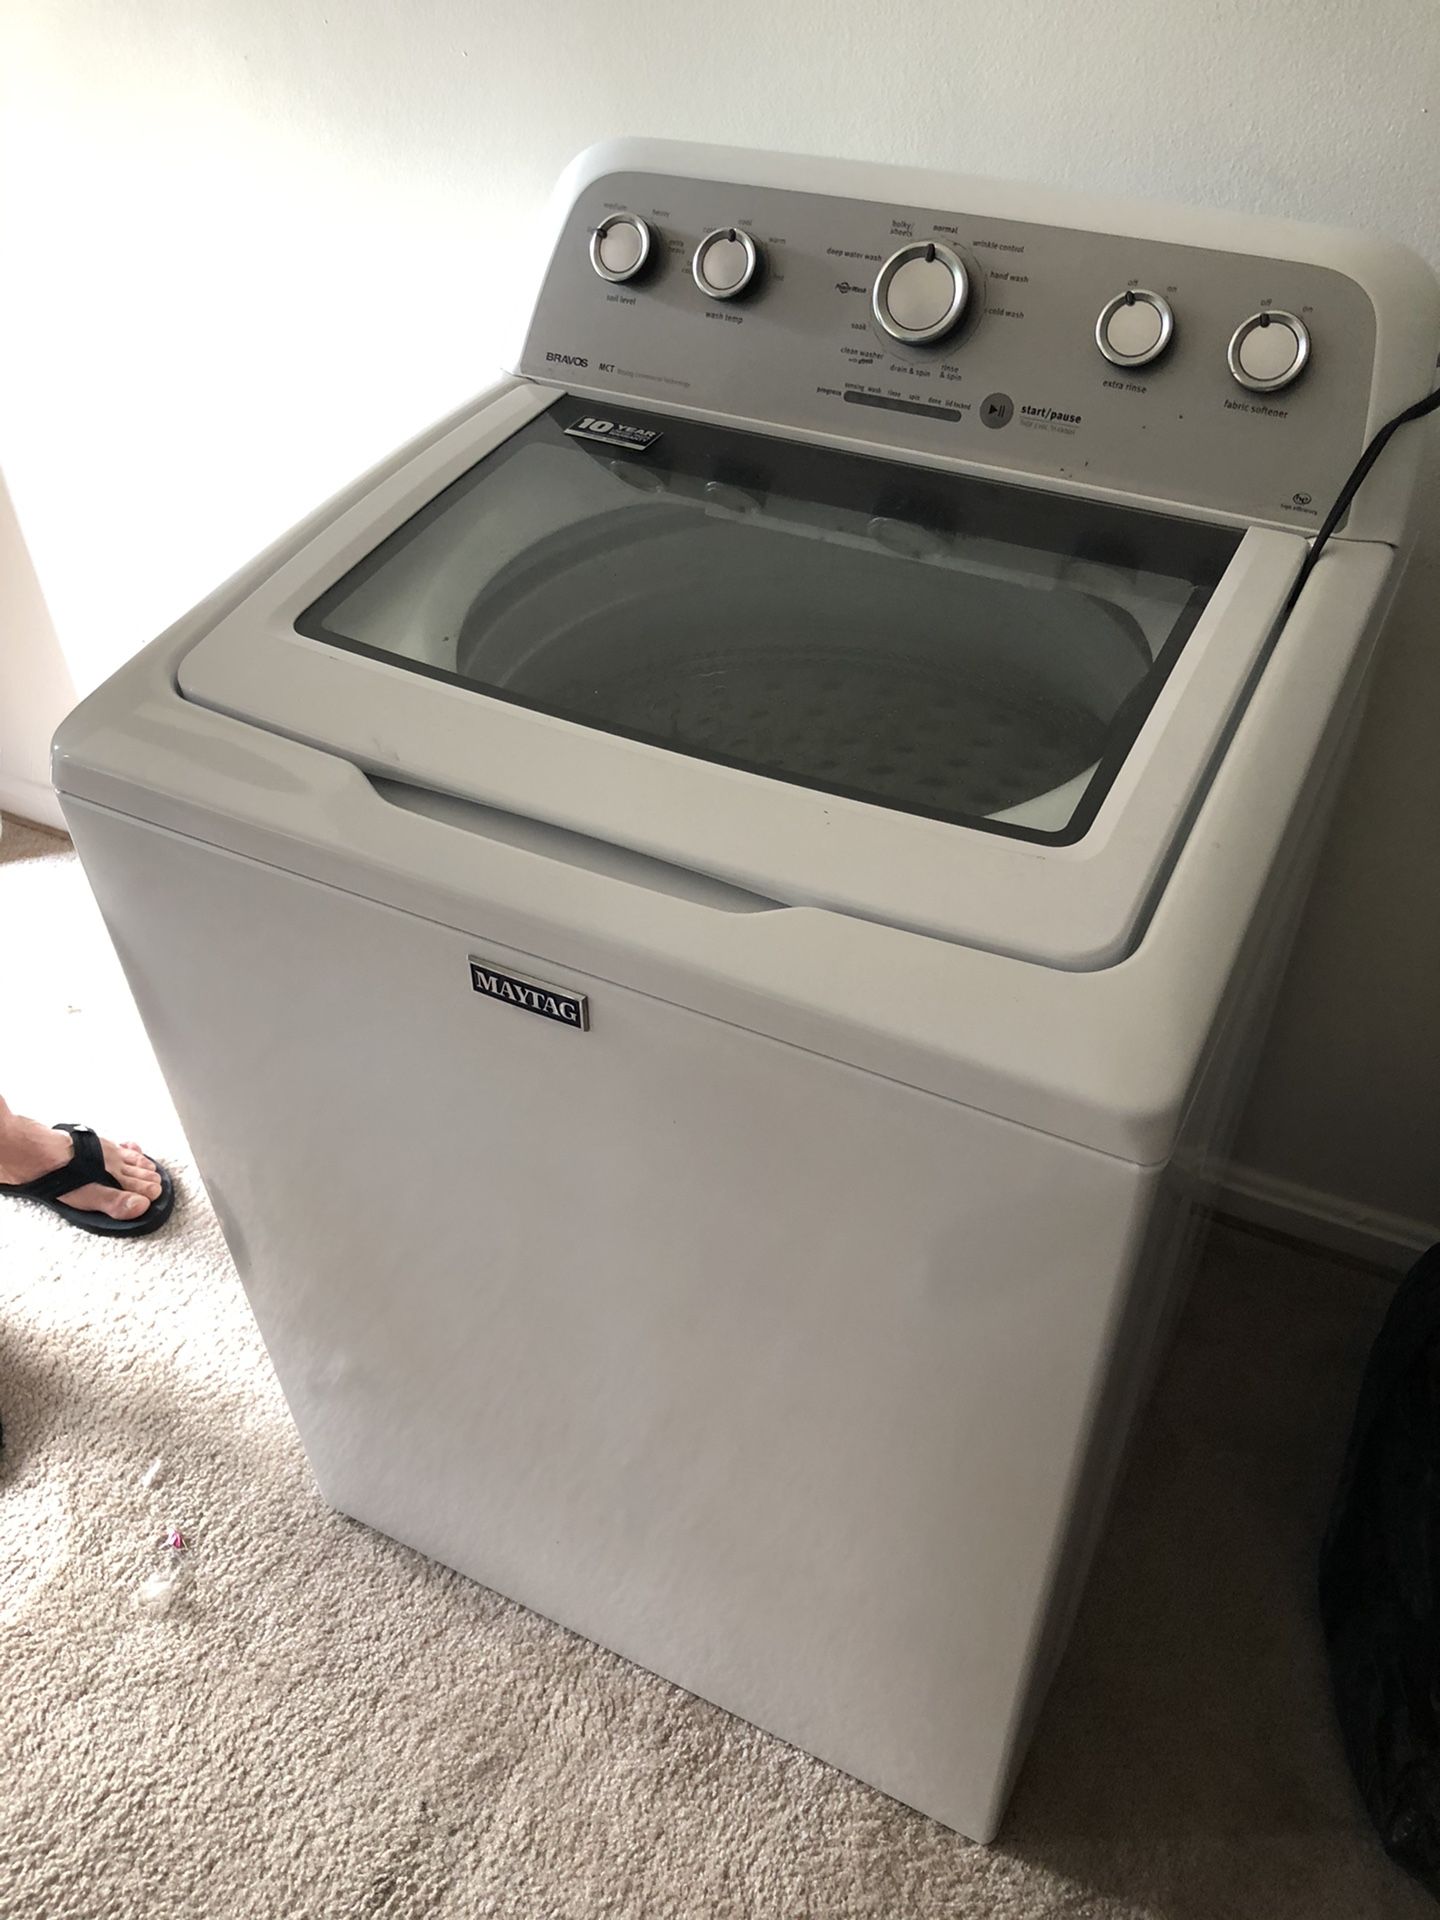 Washer and dryer machine